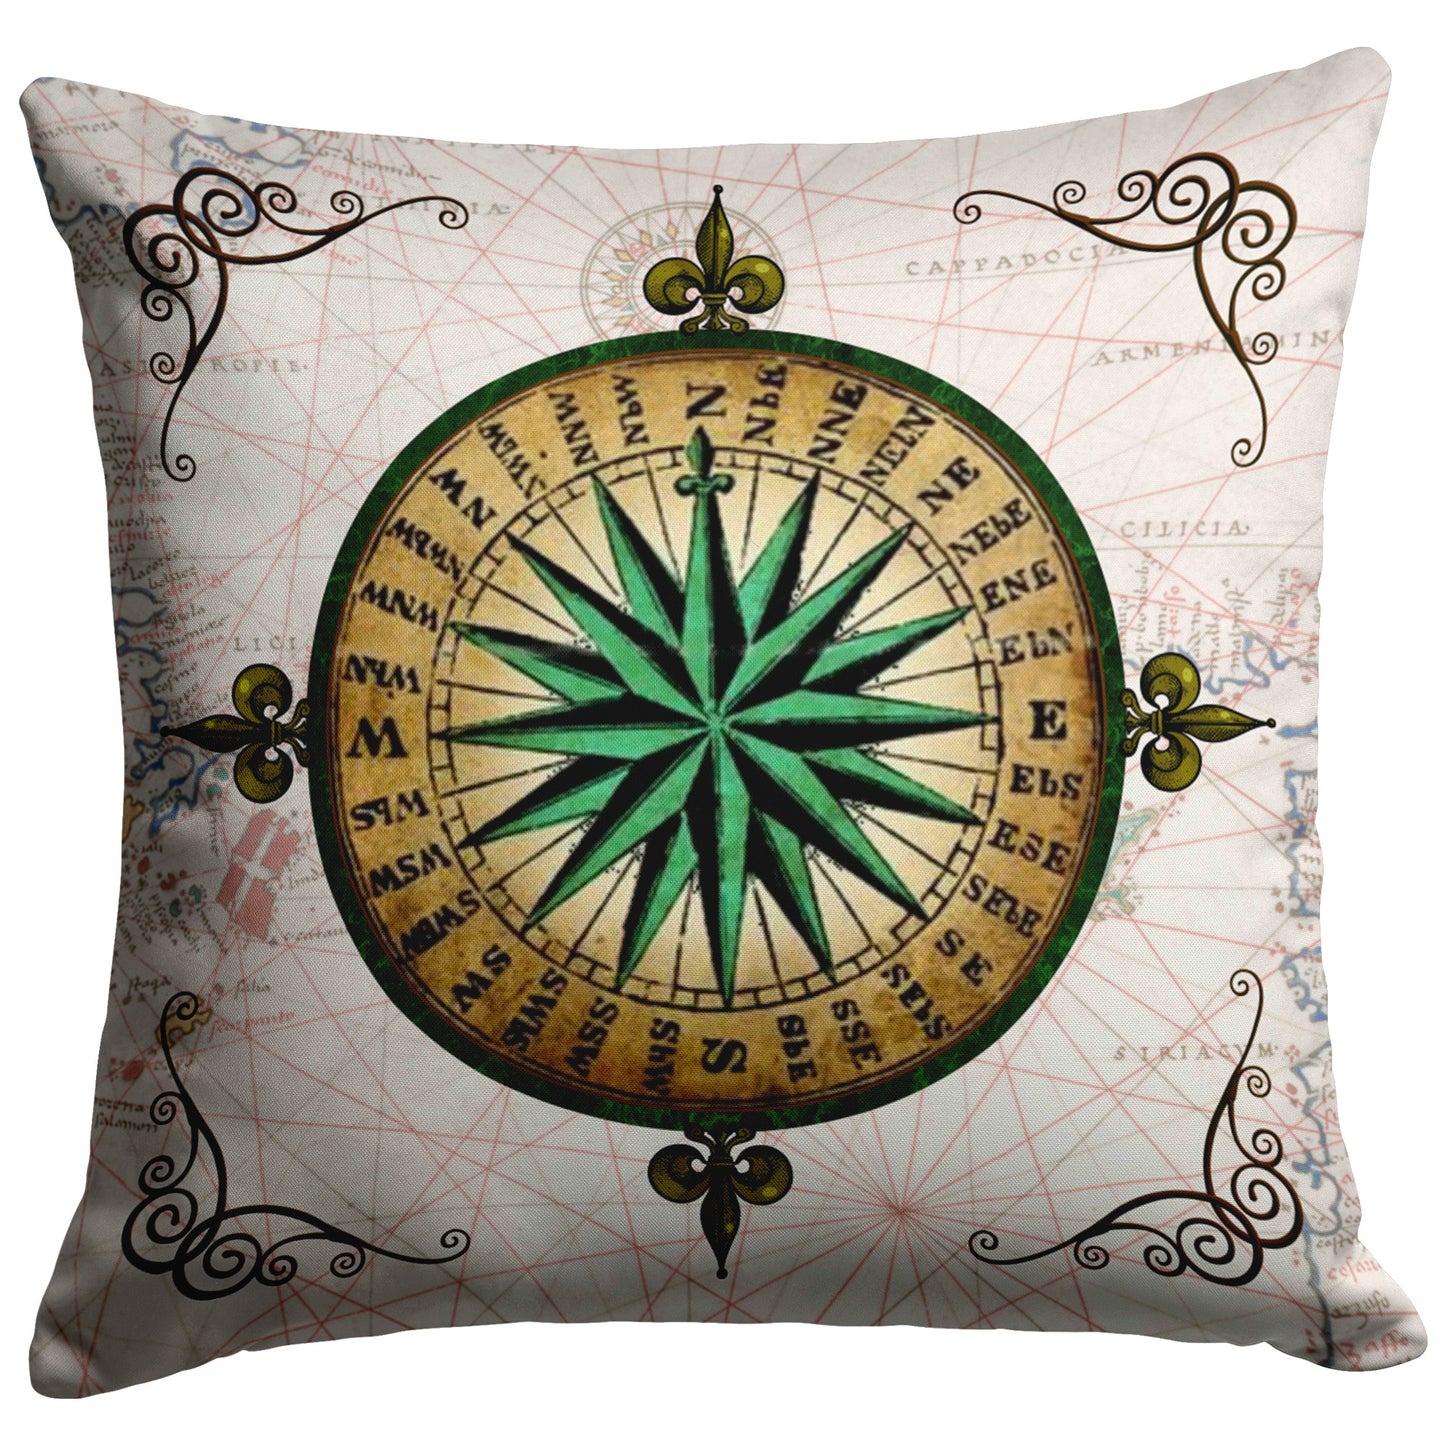 Compass Rose Throw Pillow - Green